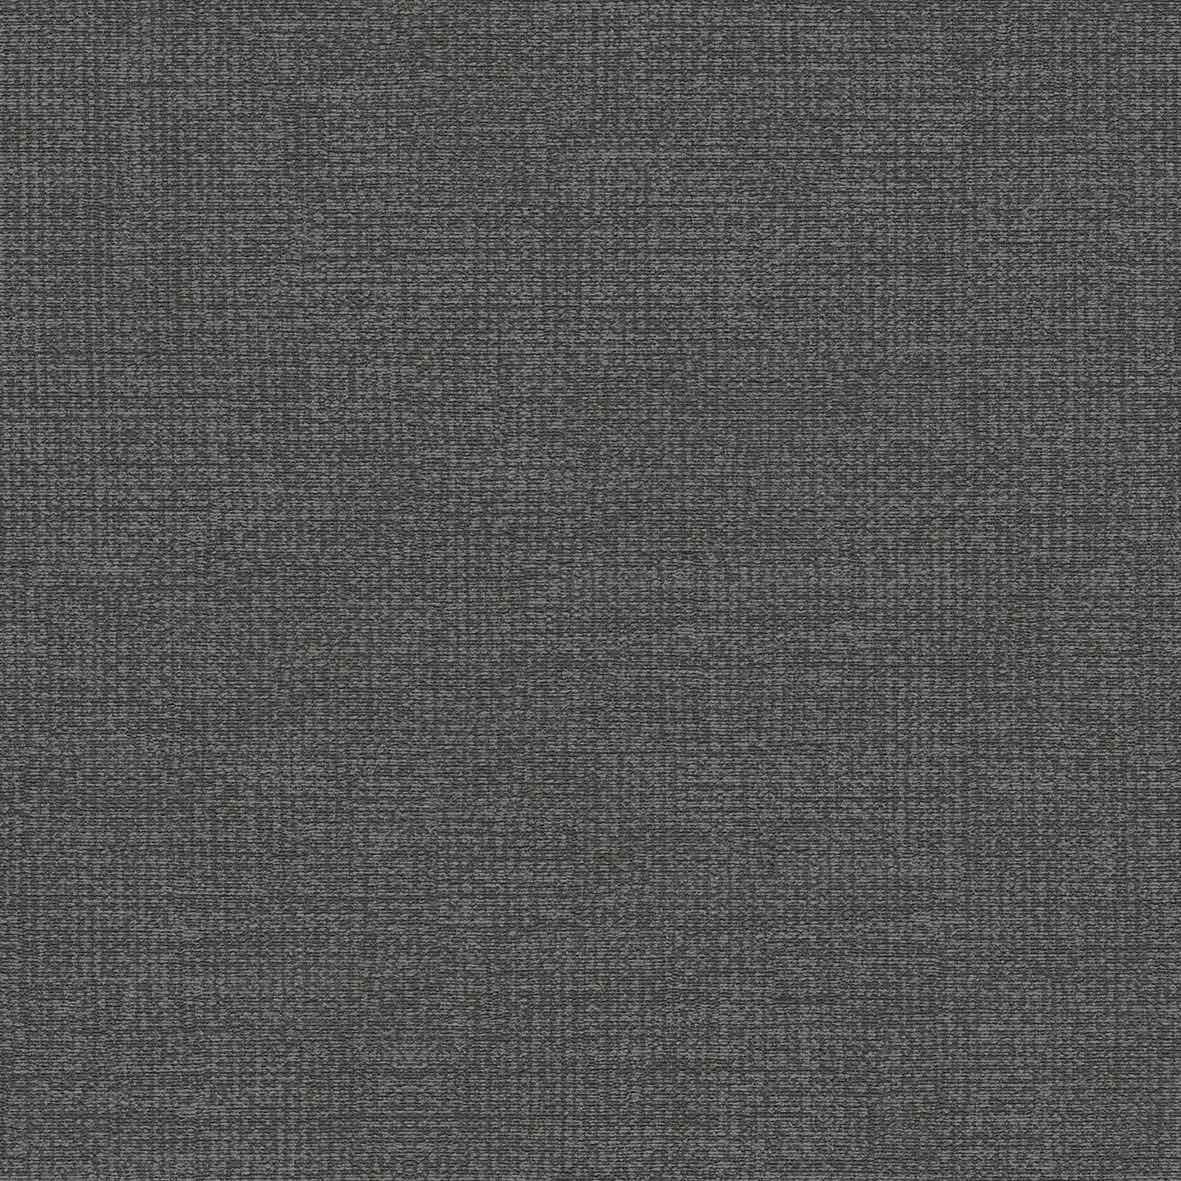 Edo-Tex Beylerbeyi JK 0600 Tekstil Tabanlı Duvar Kağıdı